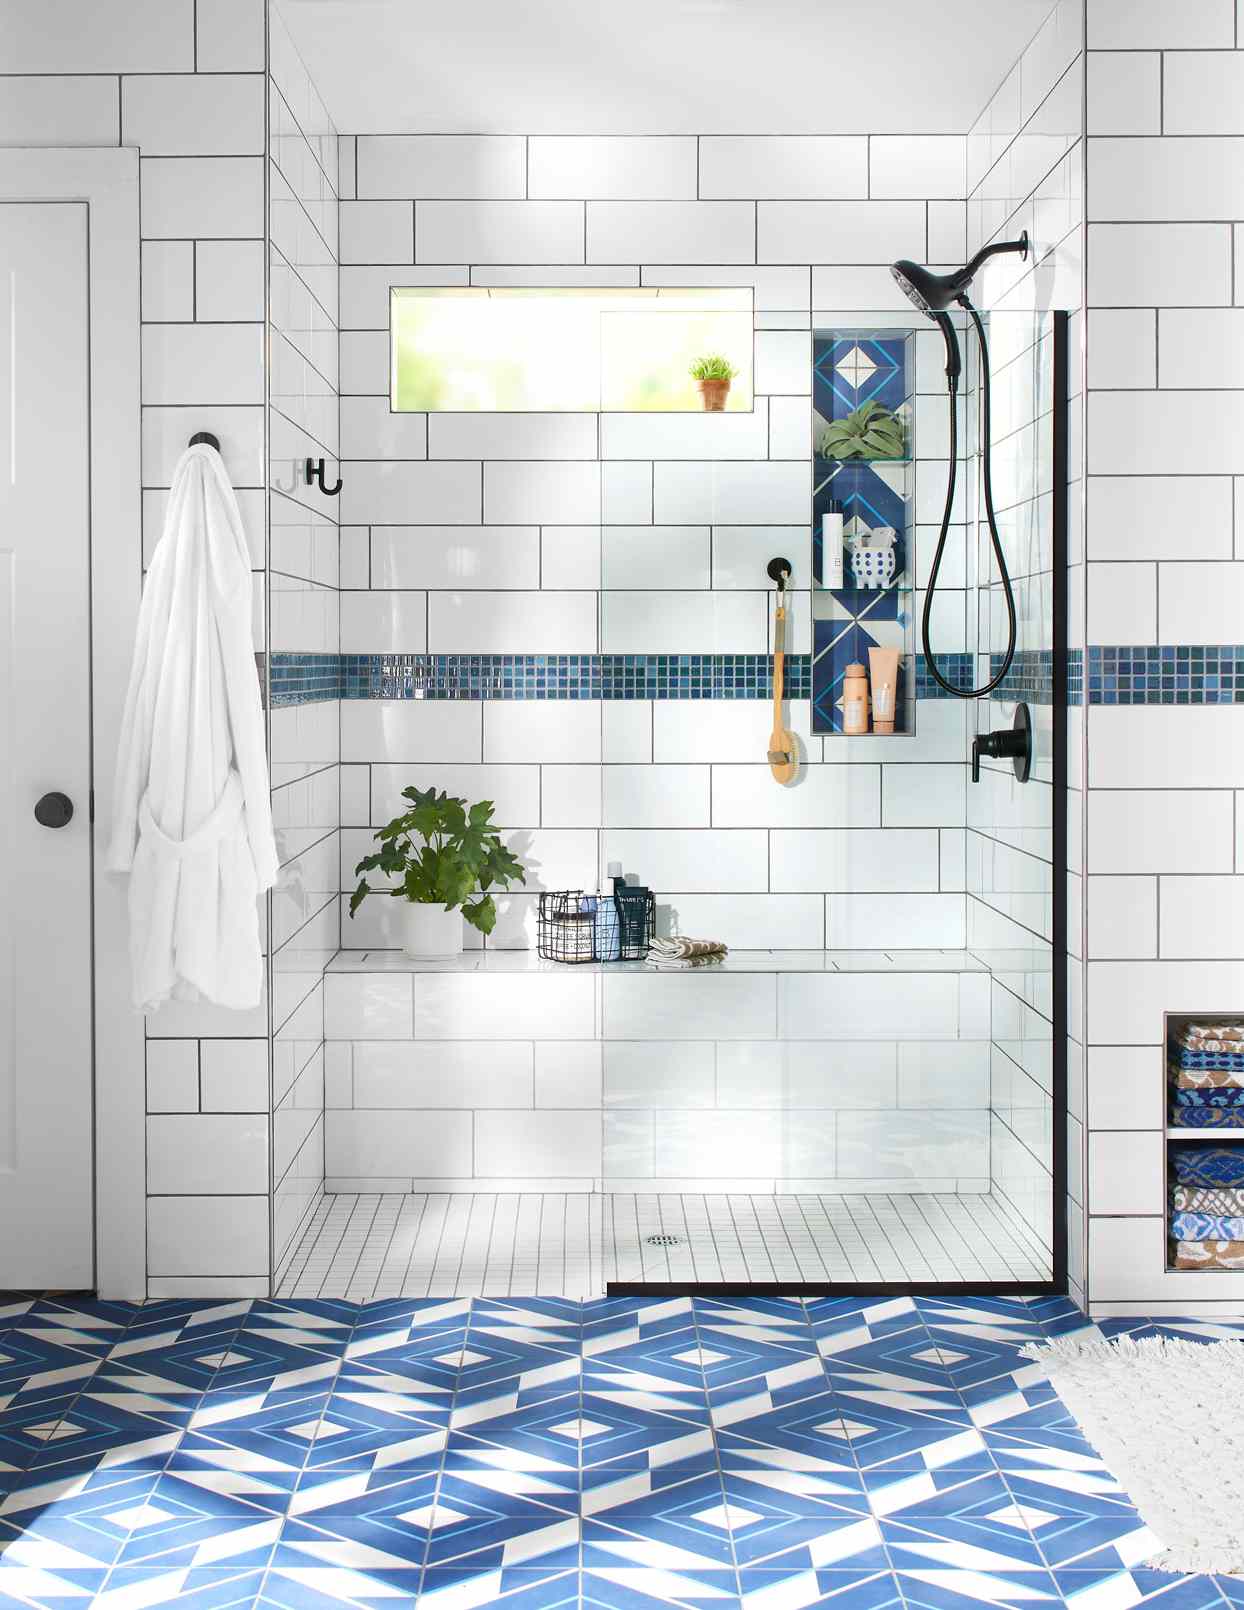 33 Breathtaking Walk In Shower Ideas, Walk In Tile Showers